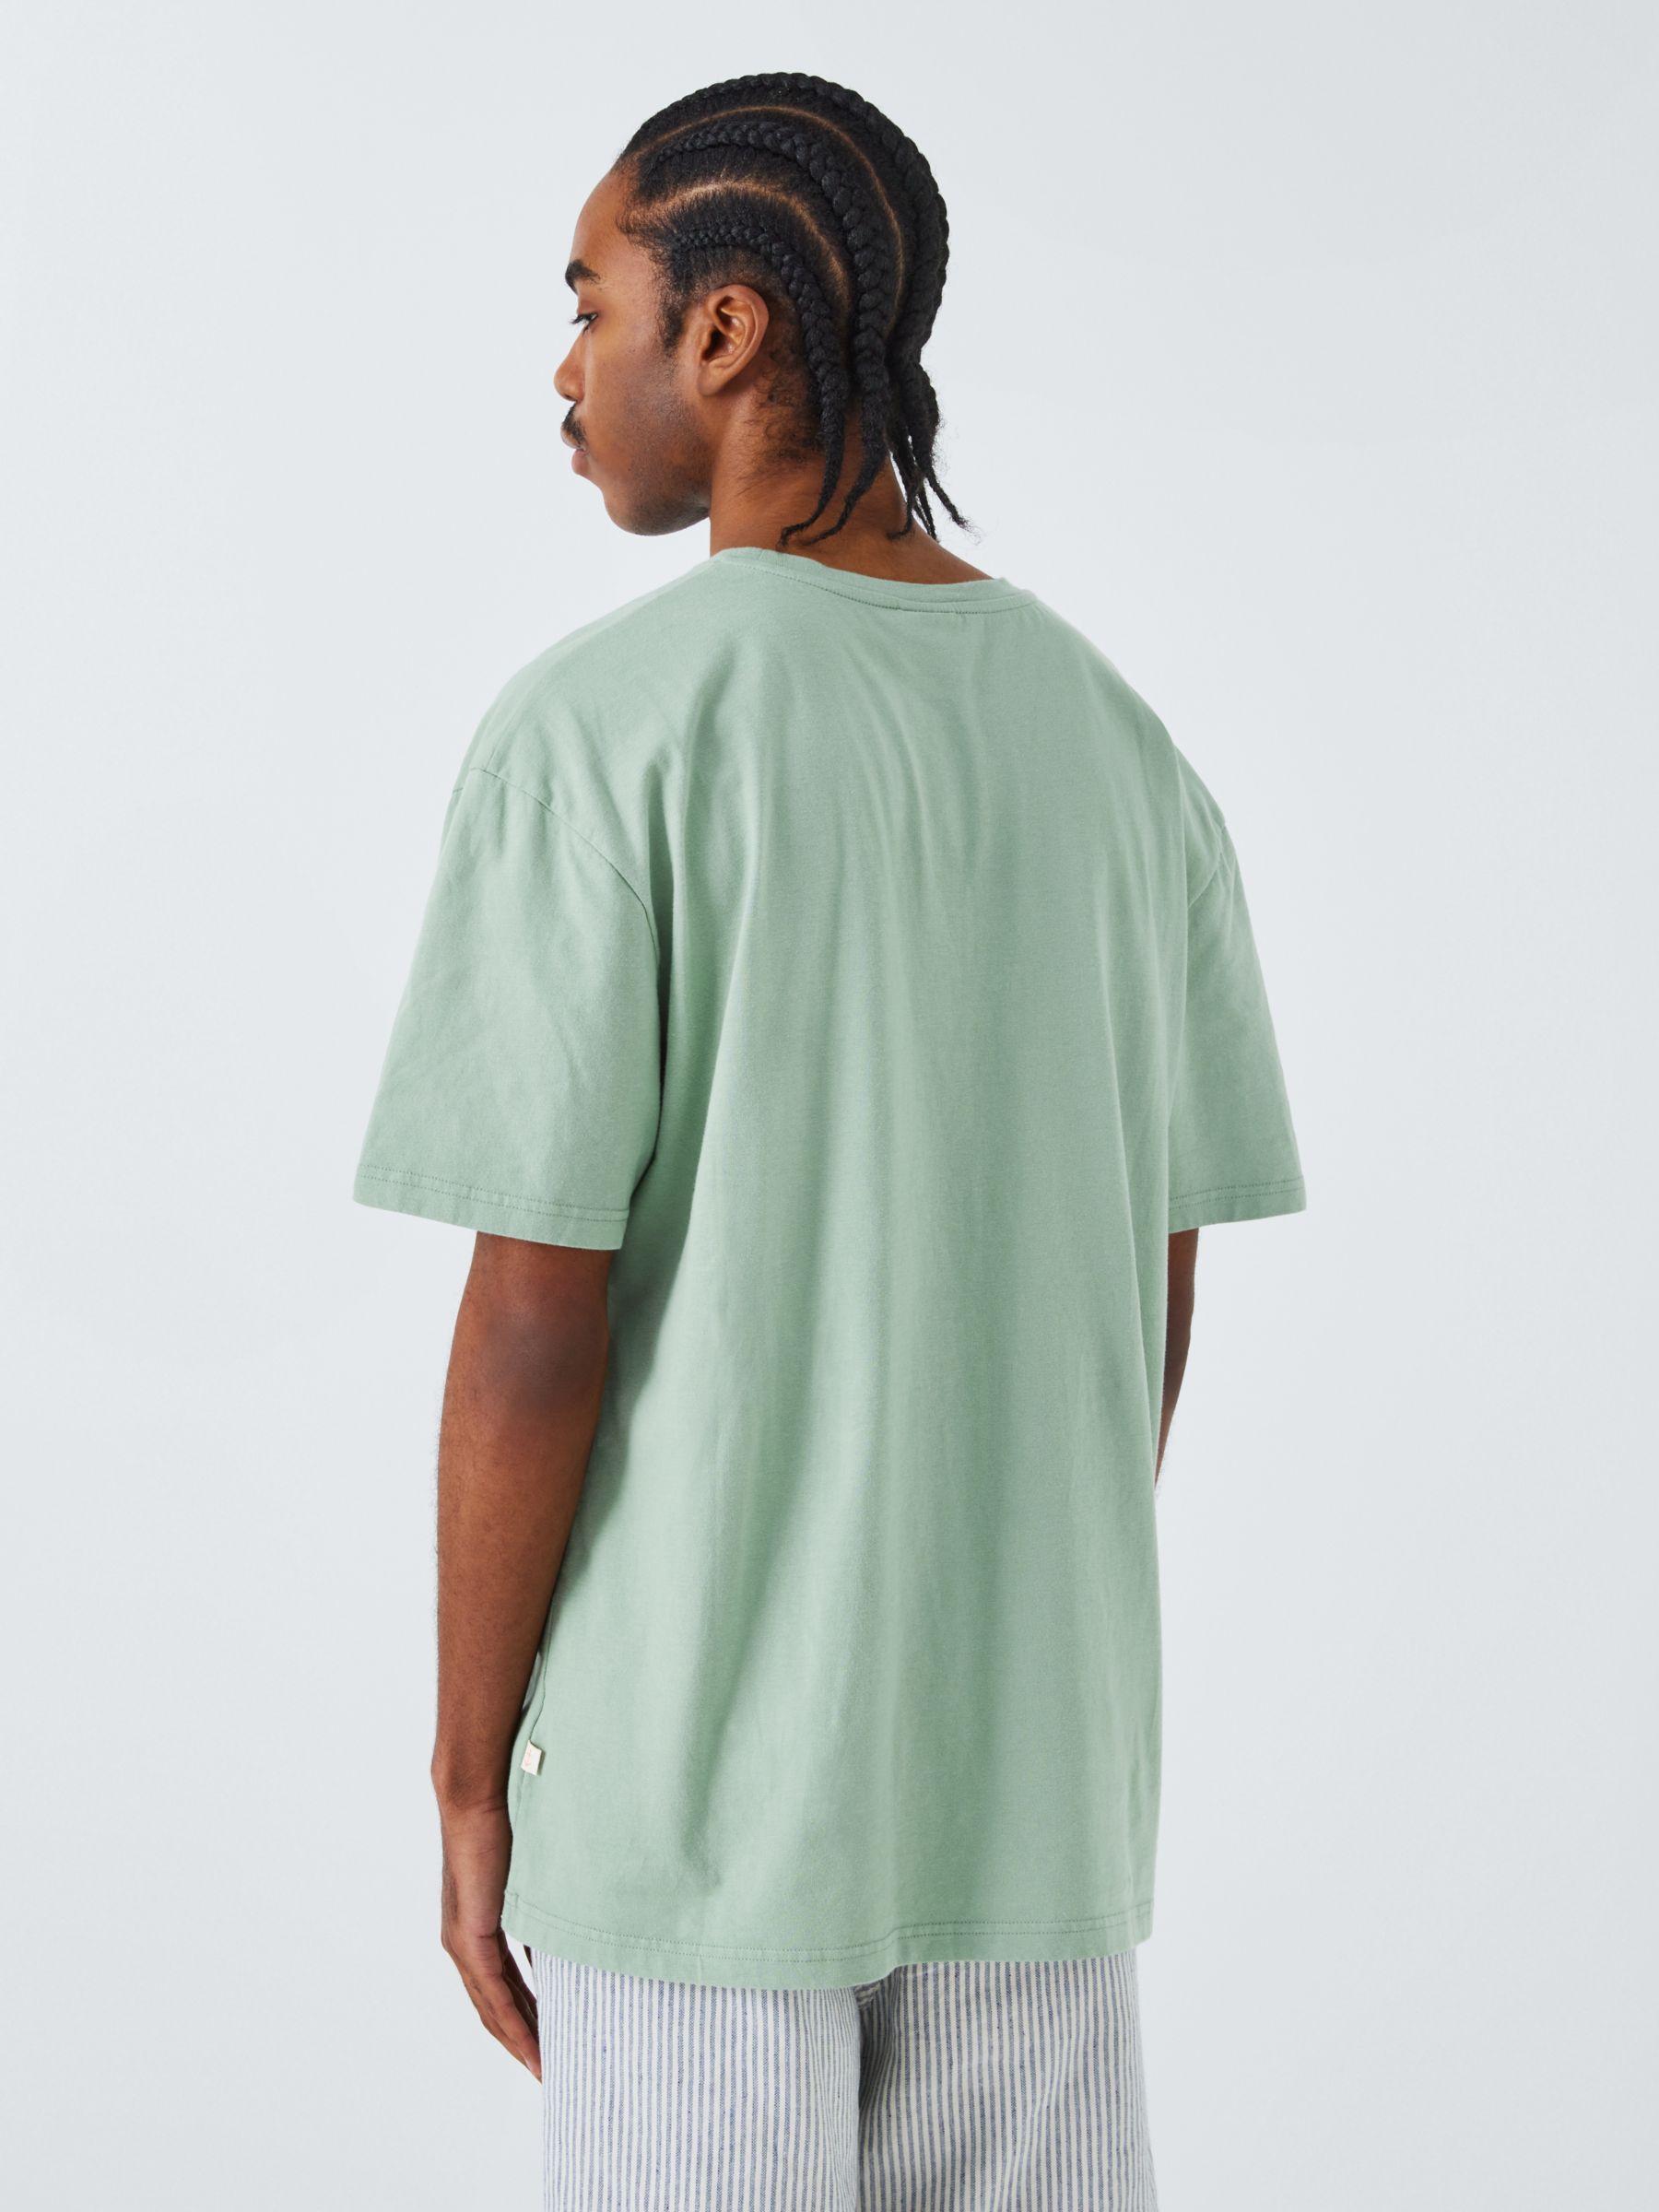 La Paz Cotton T-Shirt, Green Bay, XL